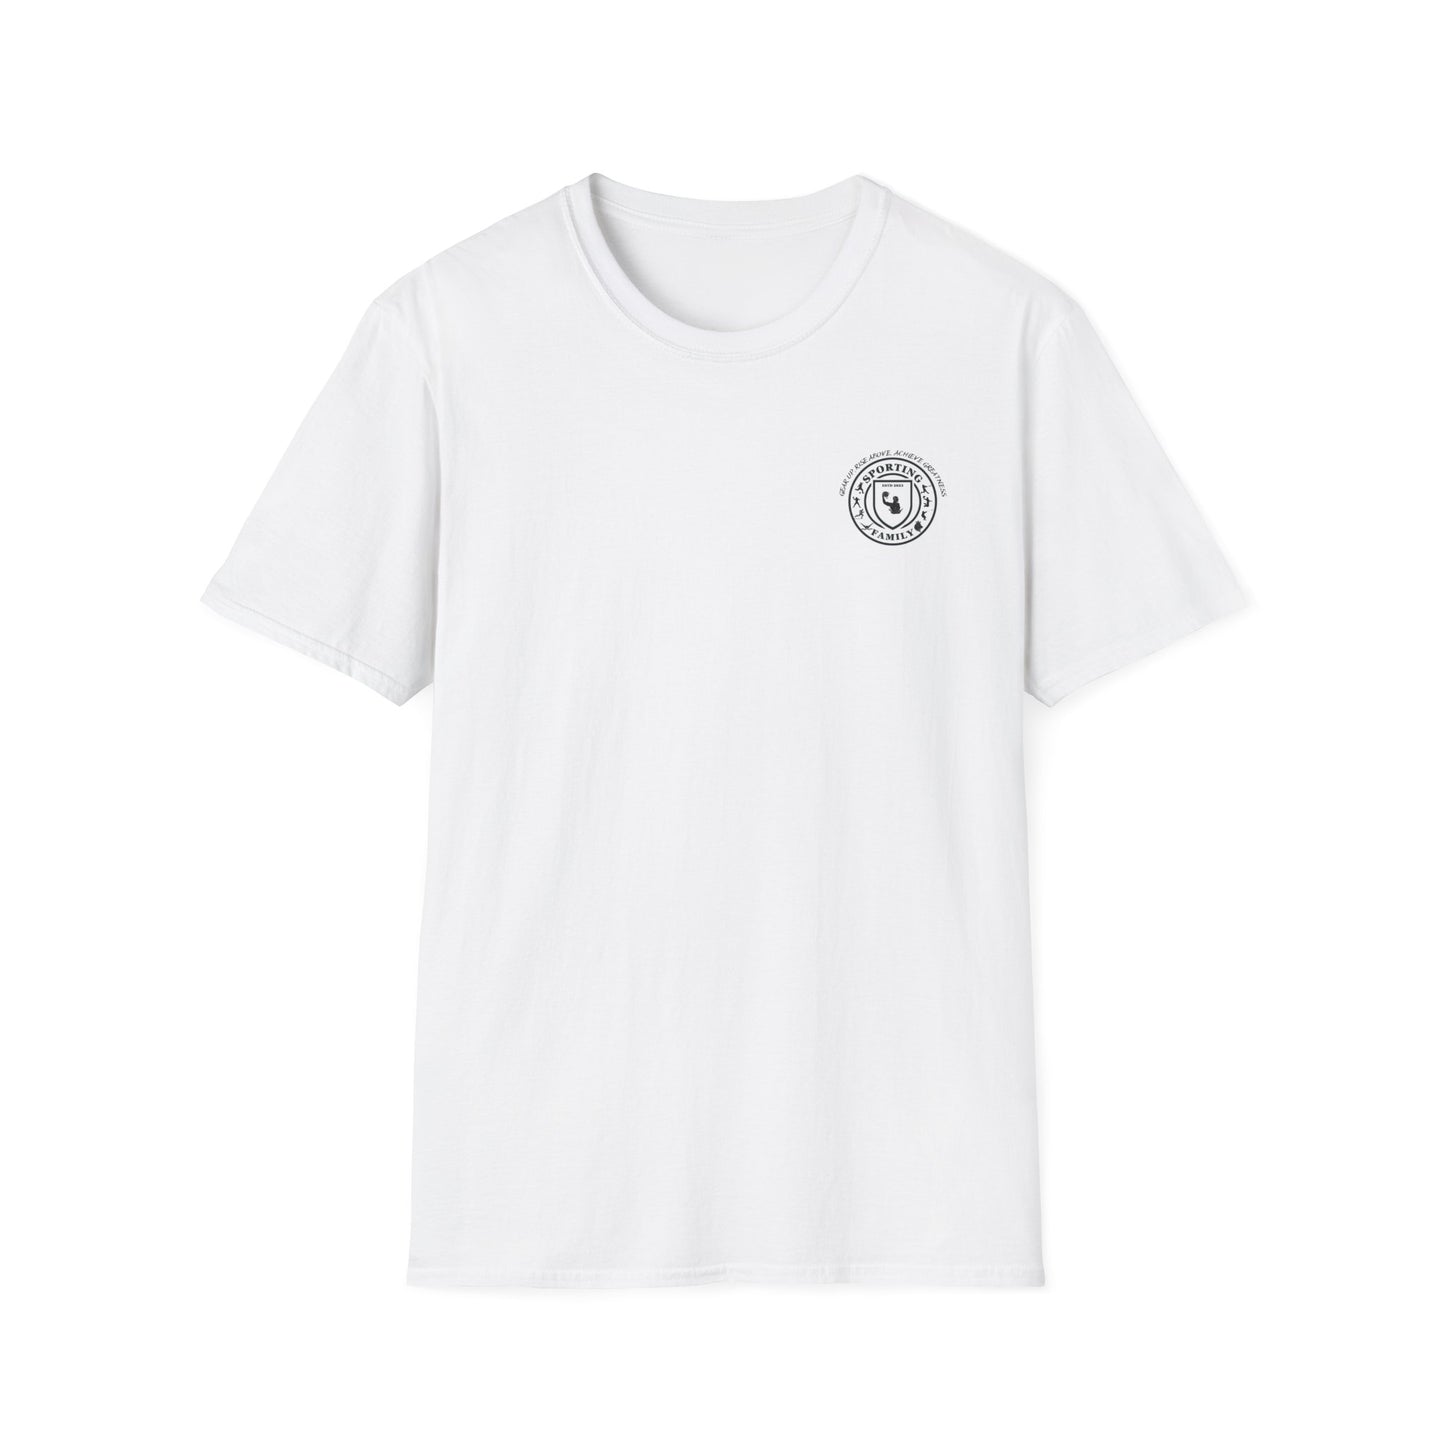 CUSTOM Unisex Softstyle T-Shirt -Dominate